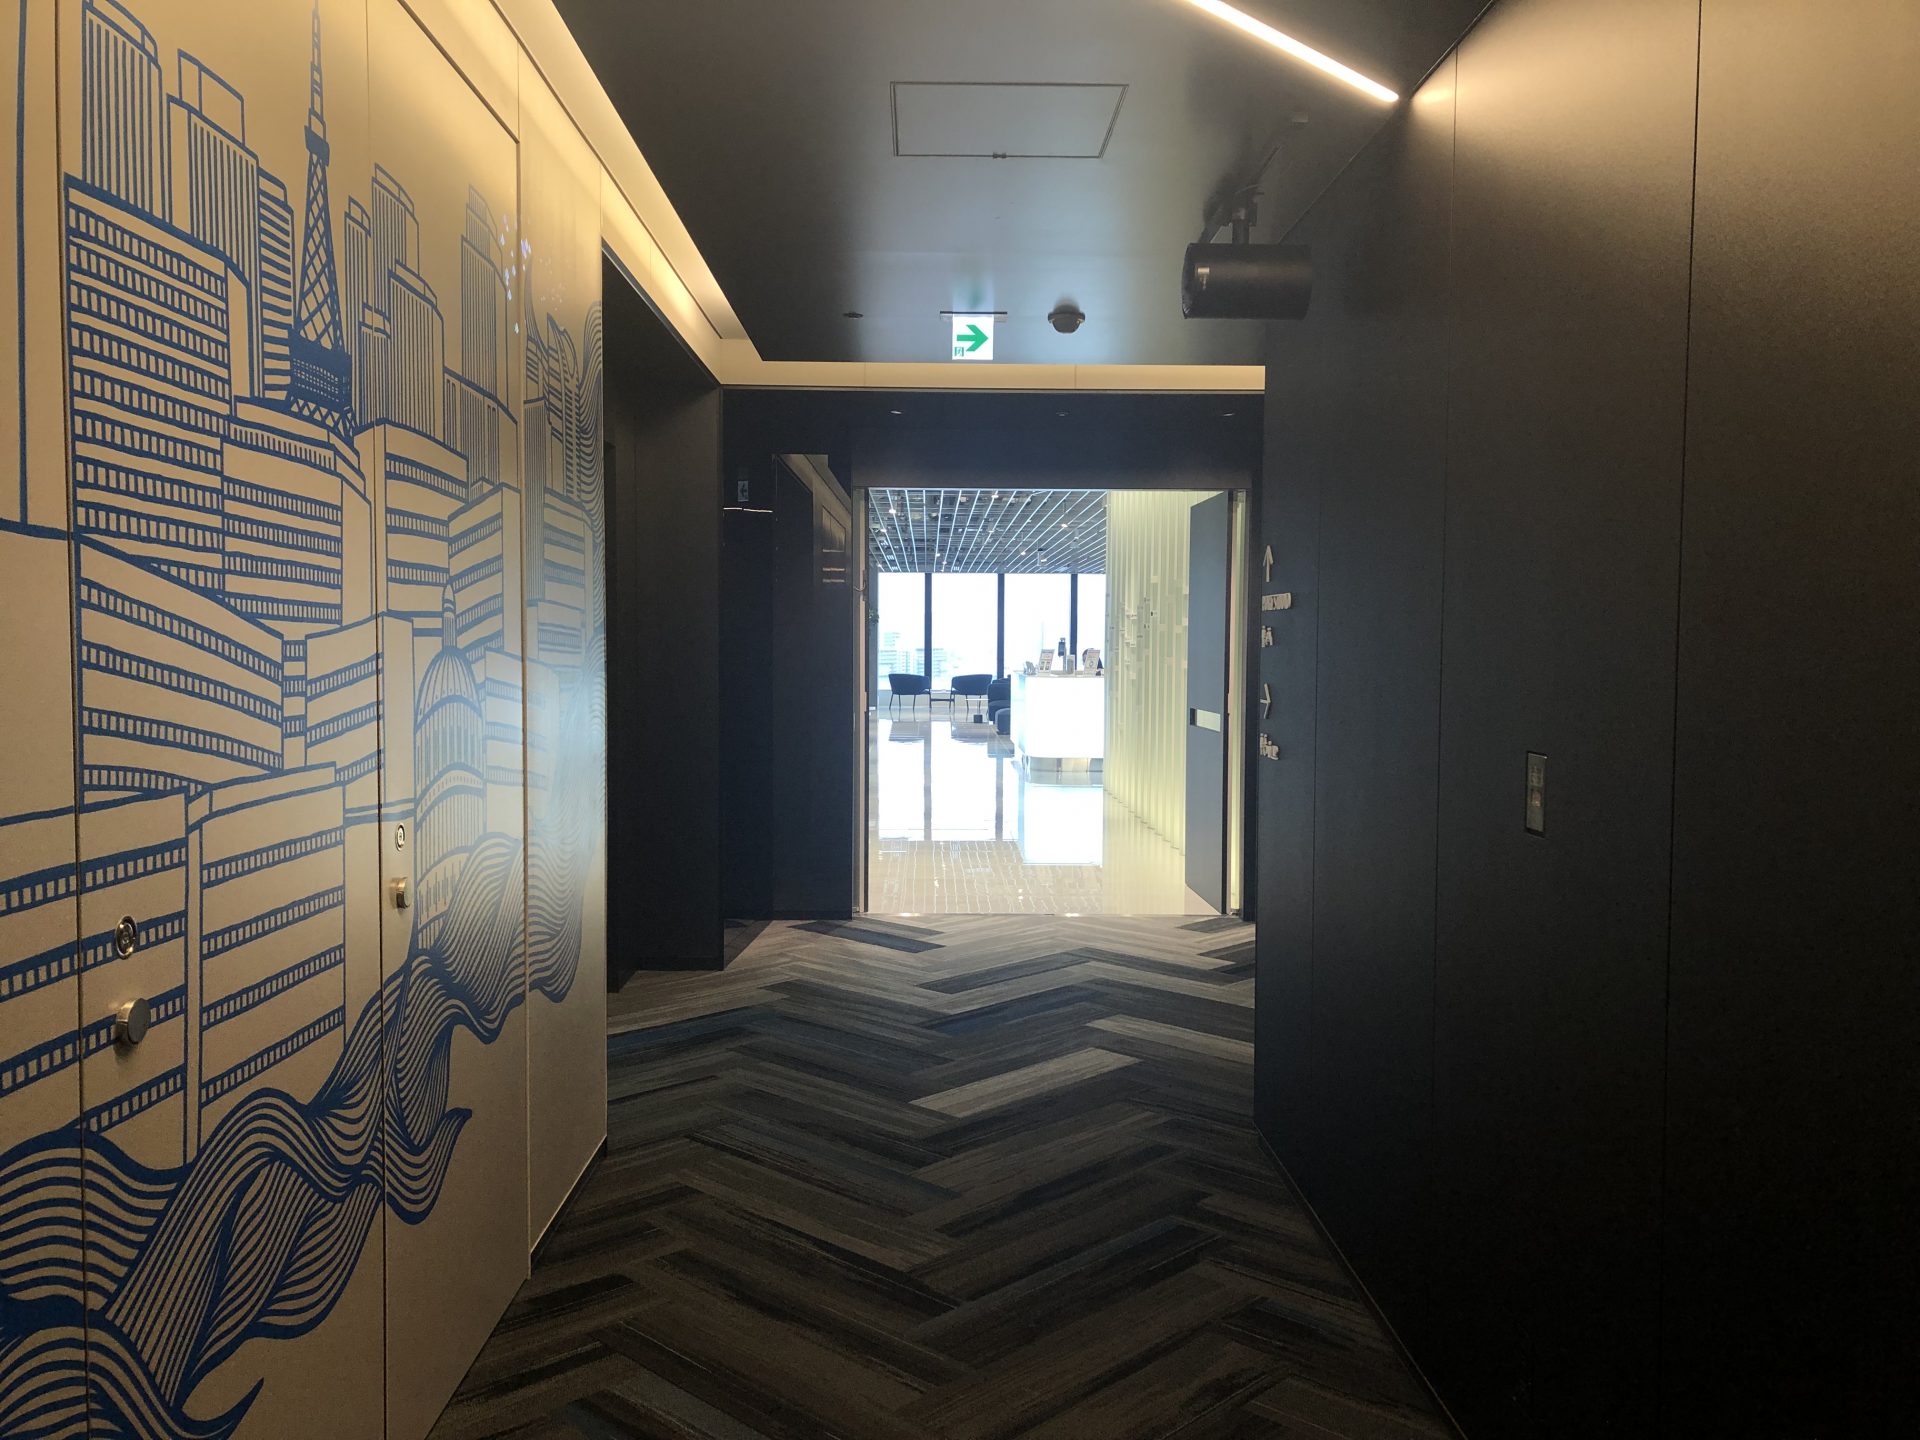 ビジネスエアポート竹芝 8Fエレベーター正面の案内表示通り、青いイラストの壁沿いに廊下を進み突き当り正面が受付